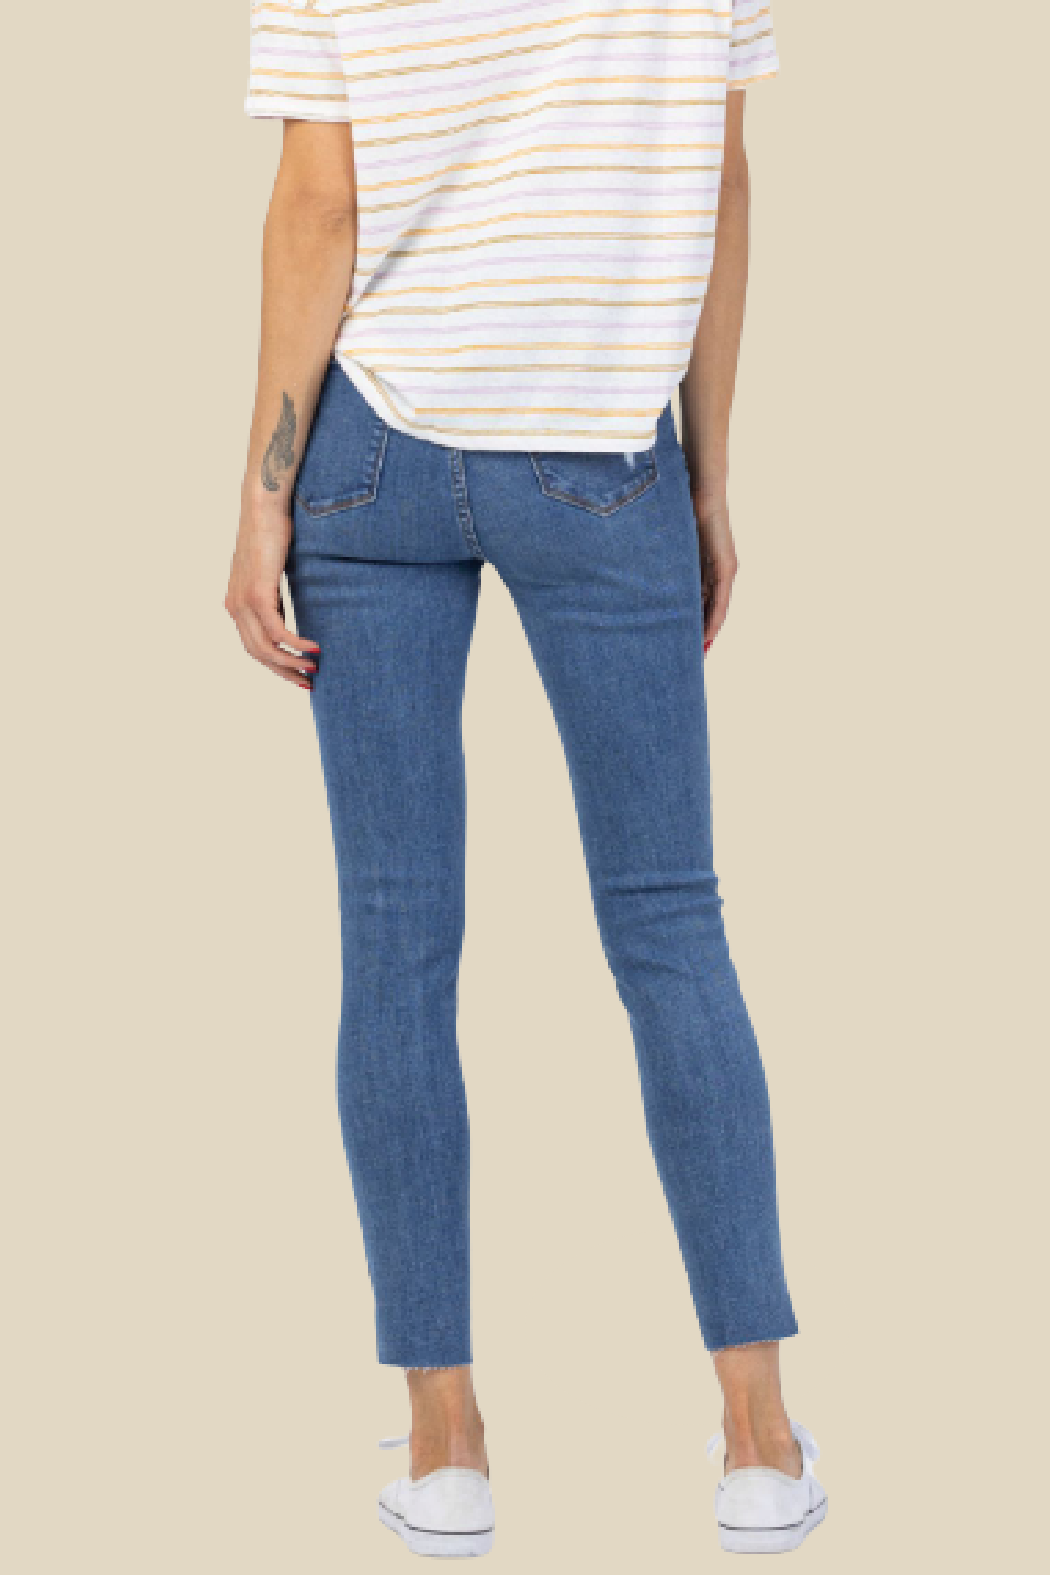 Judy Blue Dandelion Skinny Jeans